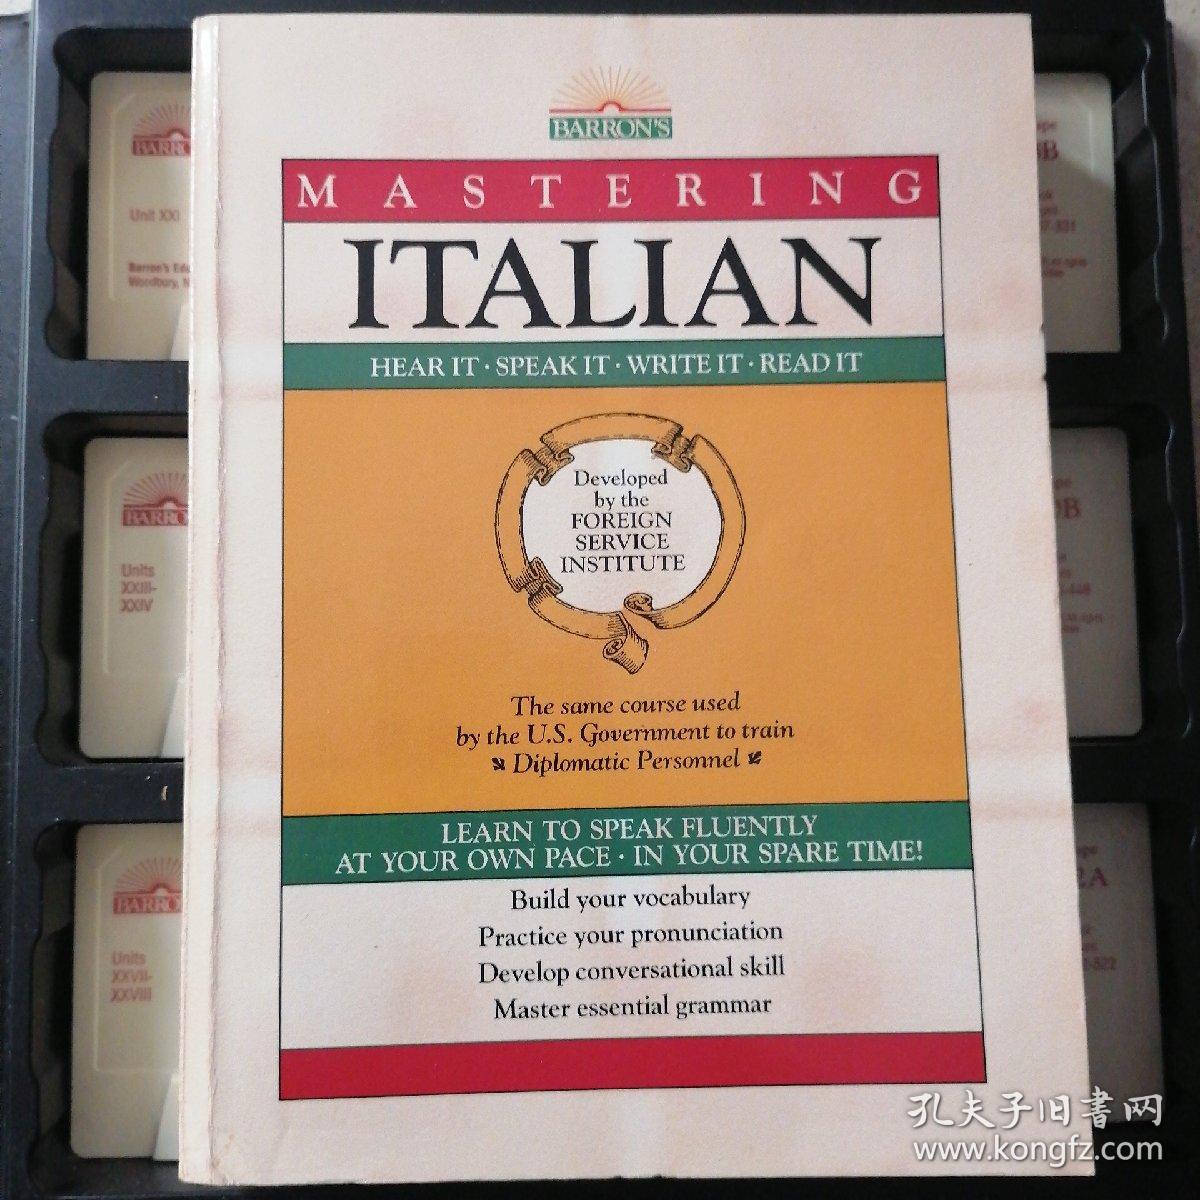 MASTERING ITALIAN，意大利语教程，带原盒，1本书12盘磁带